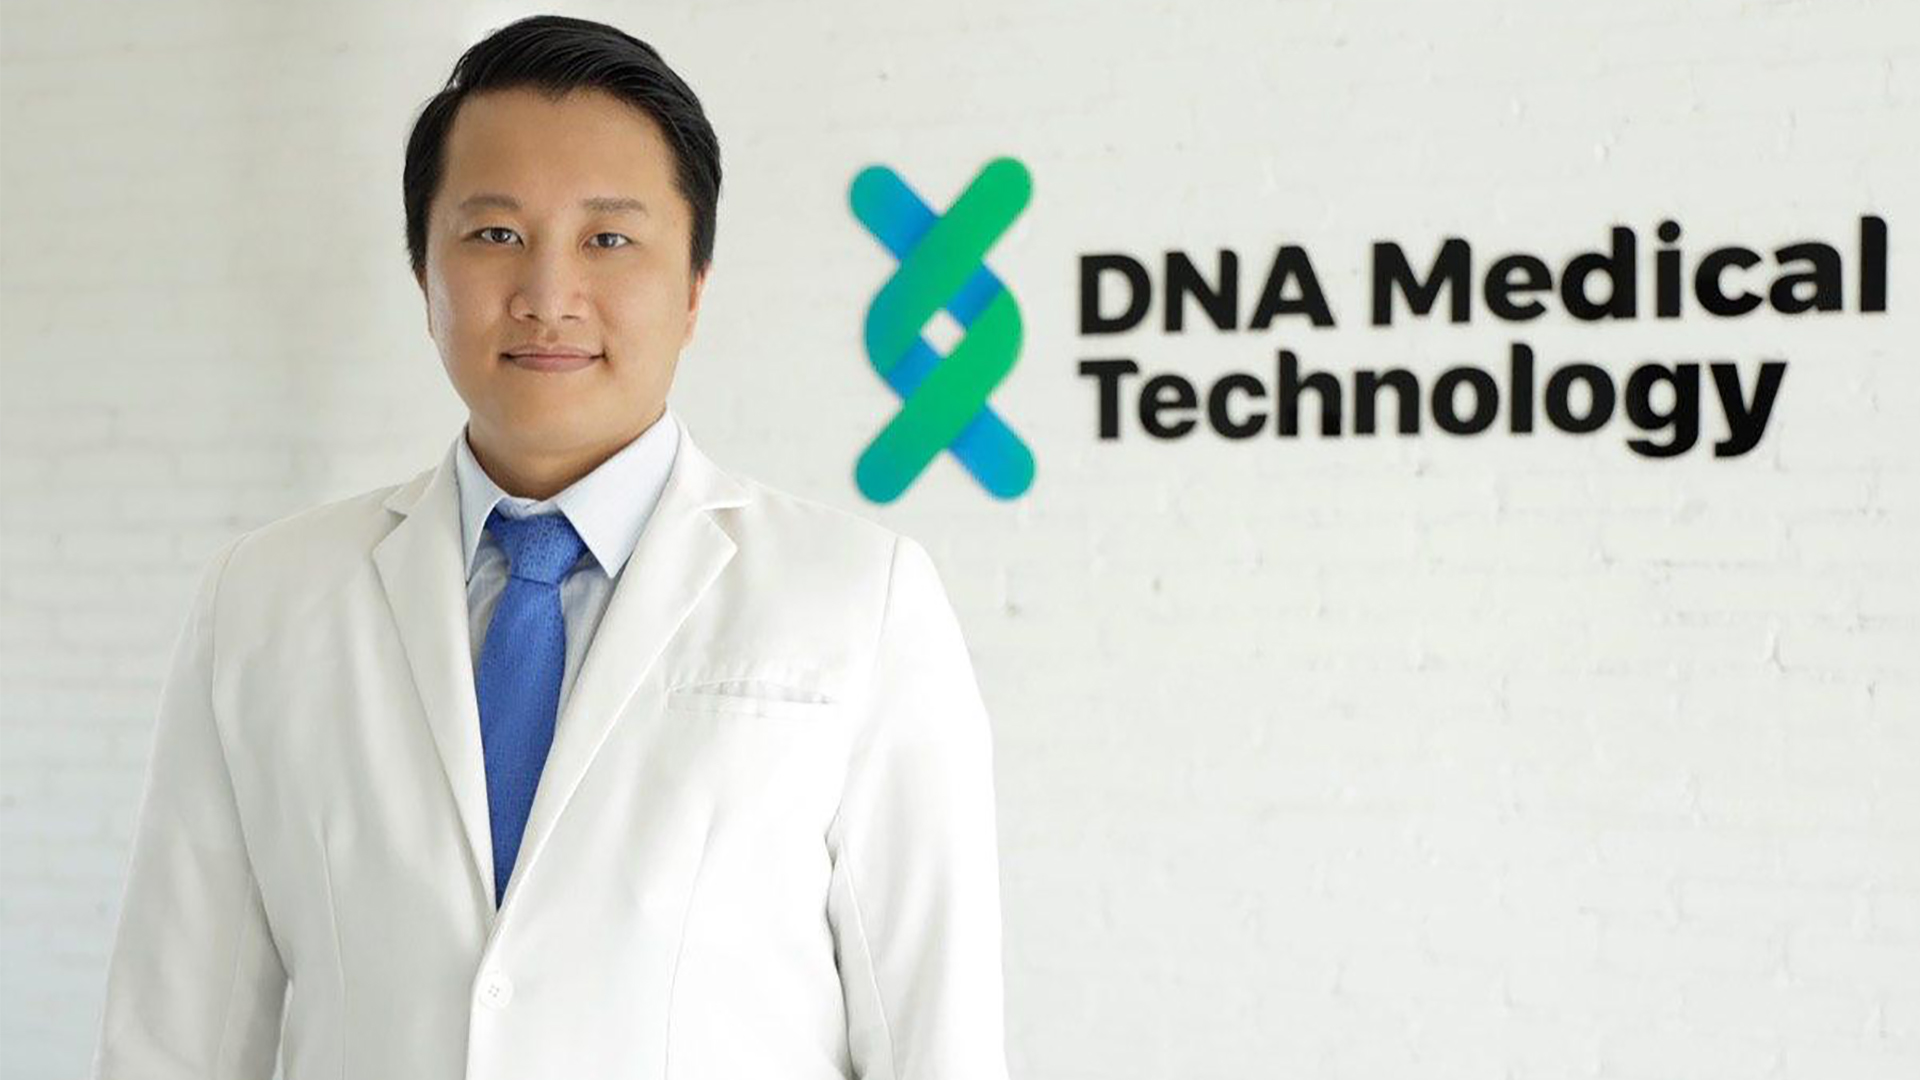 DNA Medical Technology